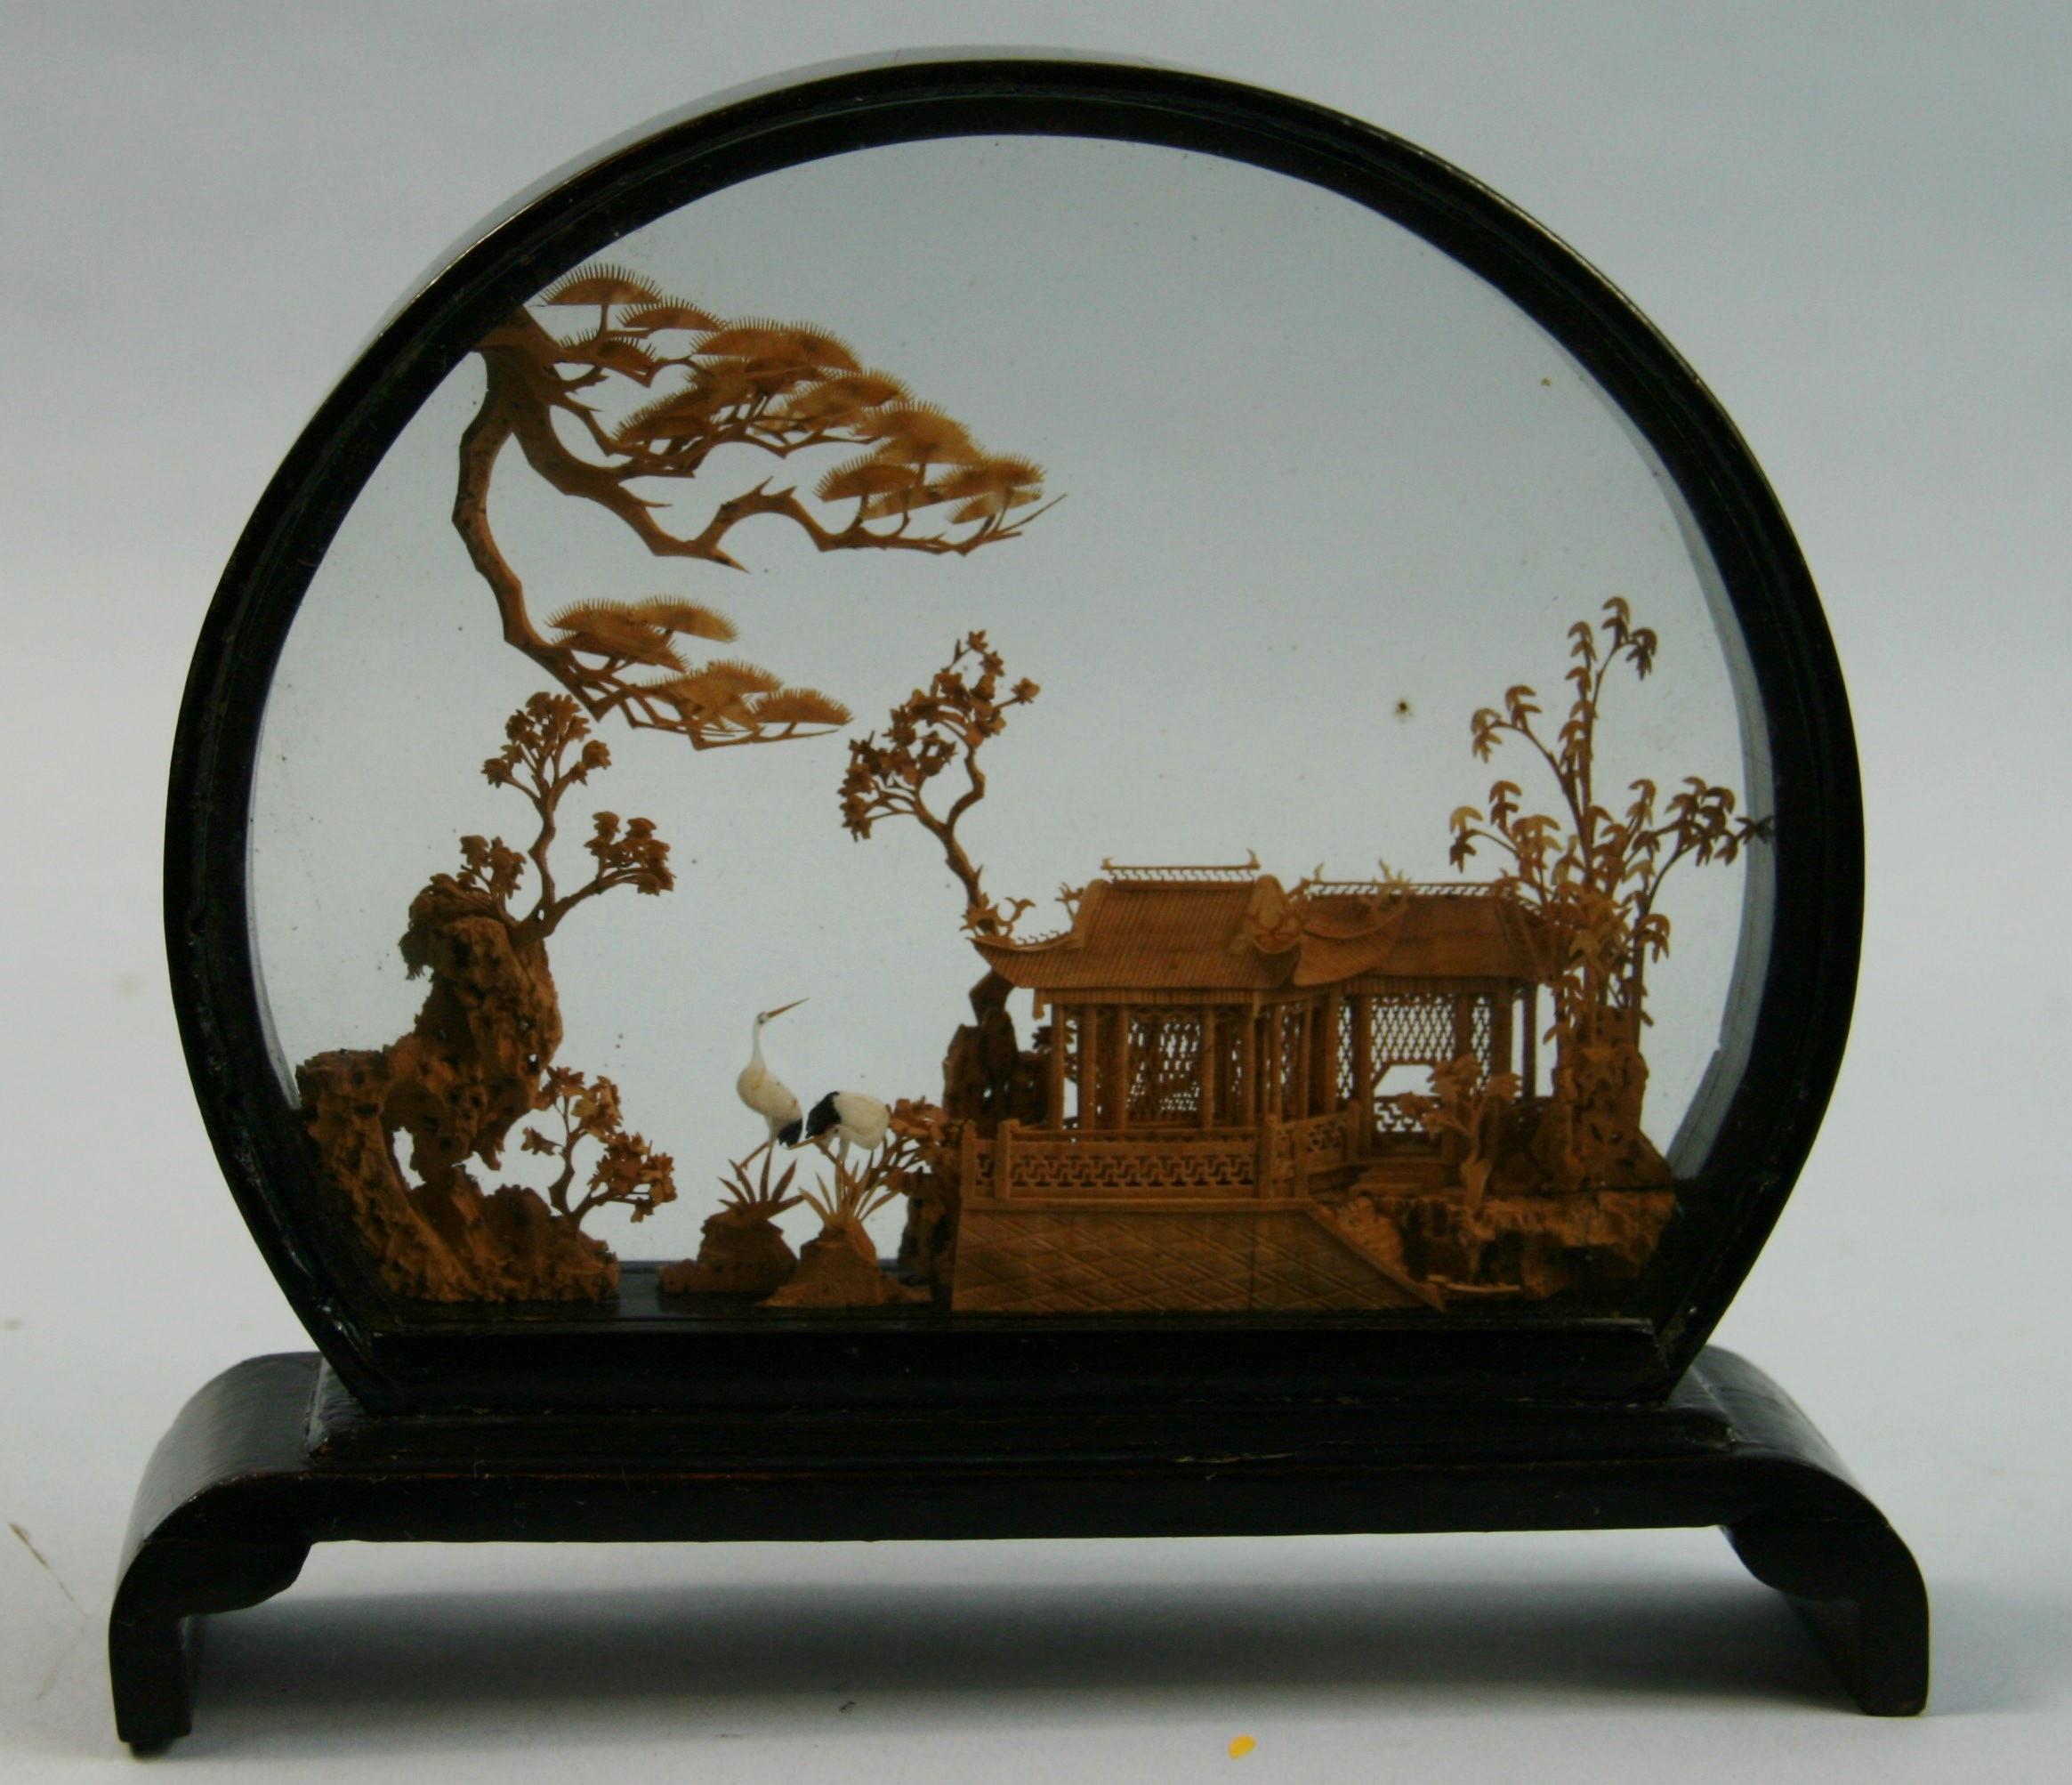 3-716 Diorama chinois en verre vintage et bois laqué.
Travail minutieux et délicat de la sculpture miniature représentant une vue de paysage chinois, une pagode dans un jardin traditionnel entouré de conifères, de claies de bambou et de craines.